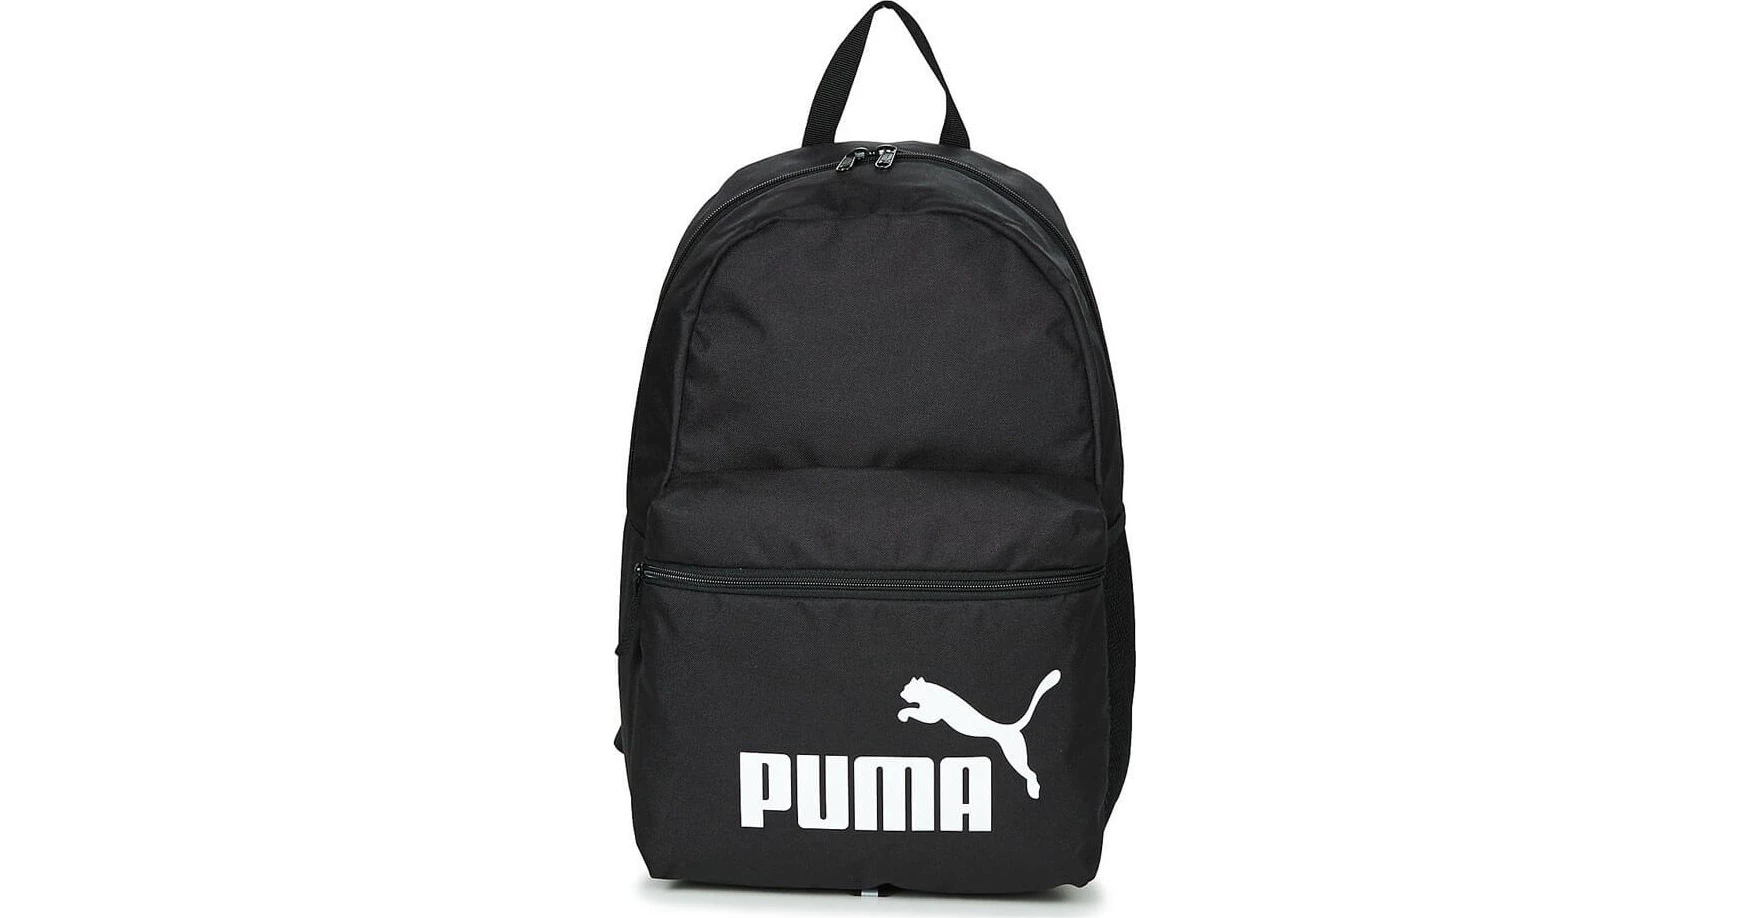 Рюкзак Puma Lamborghini. Only packs